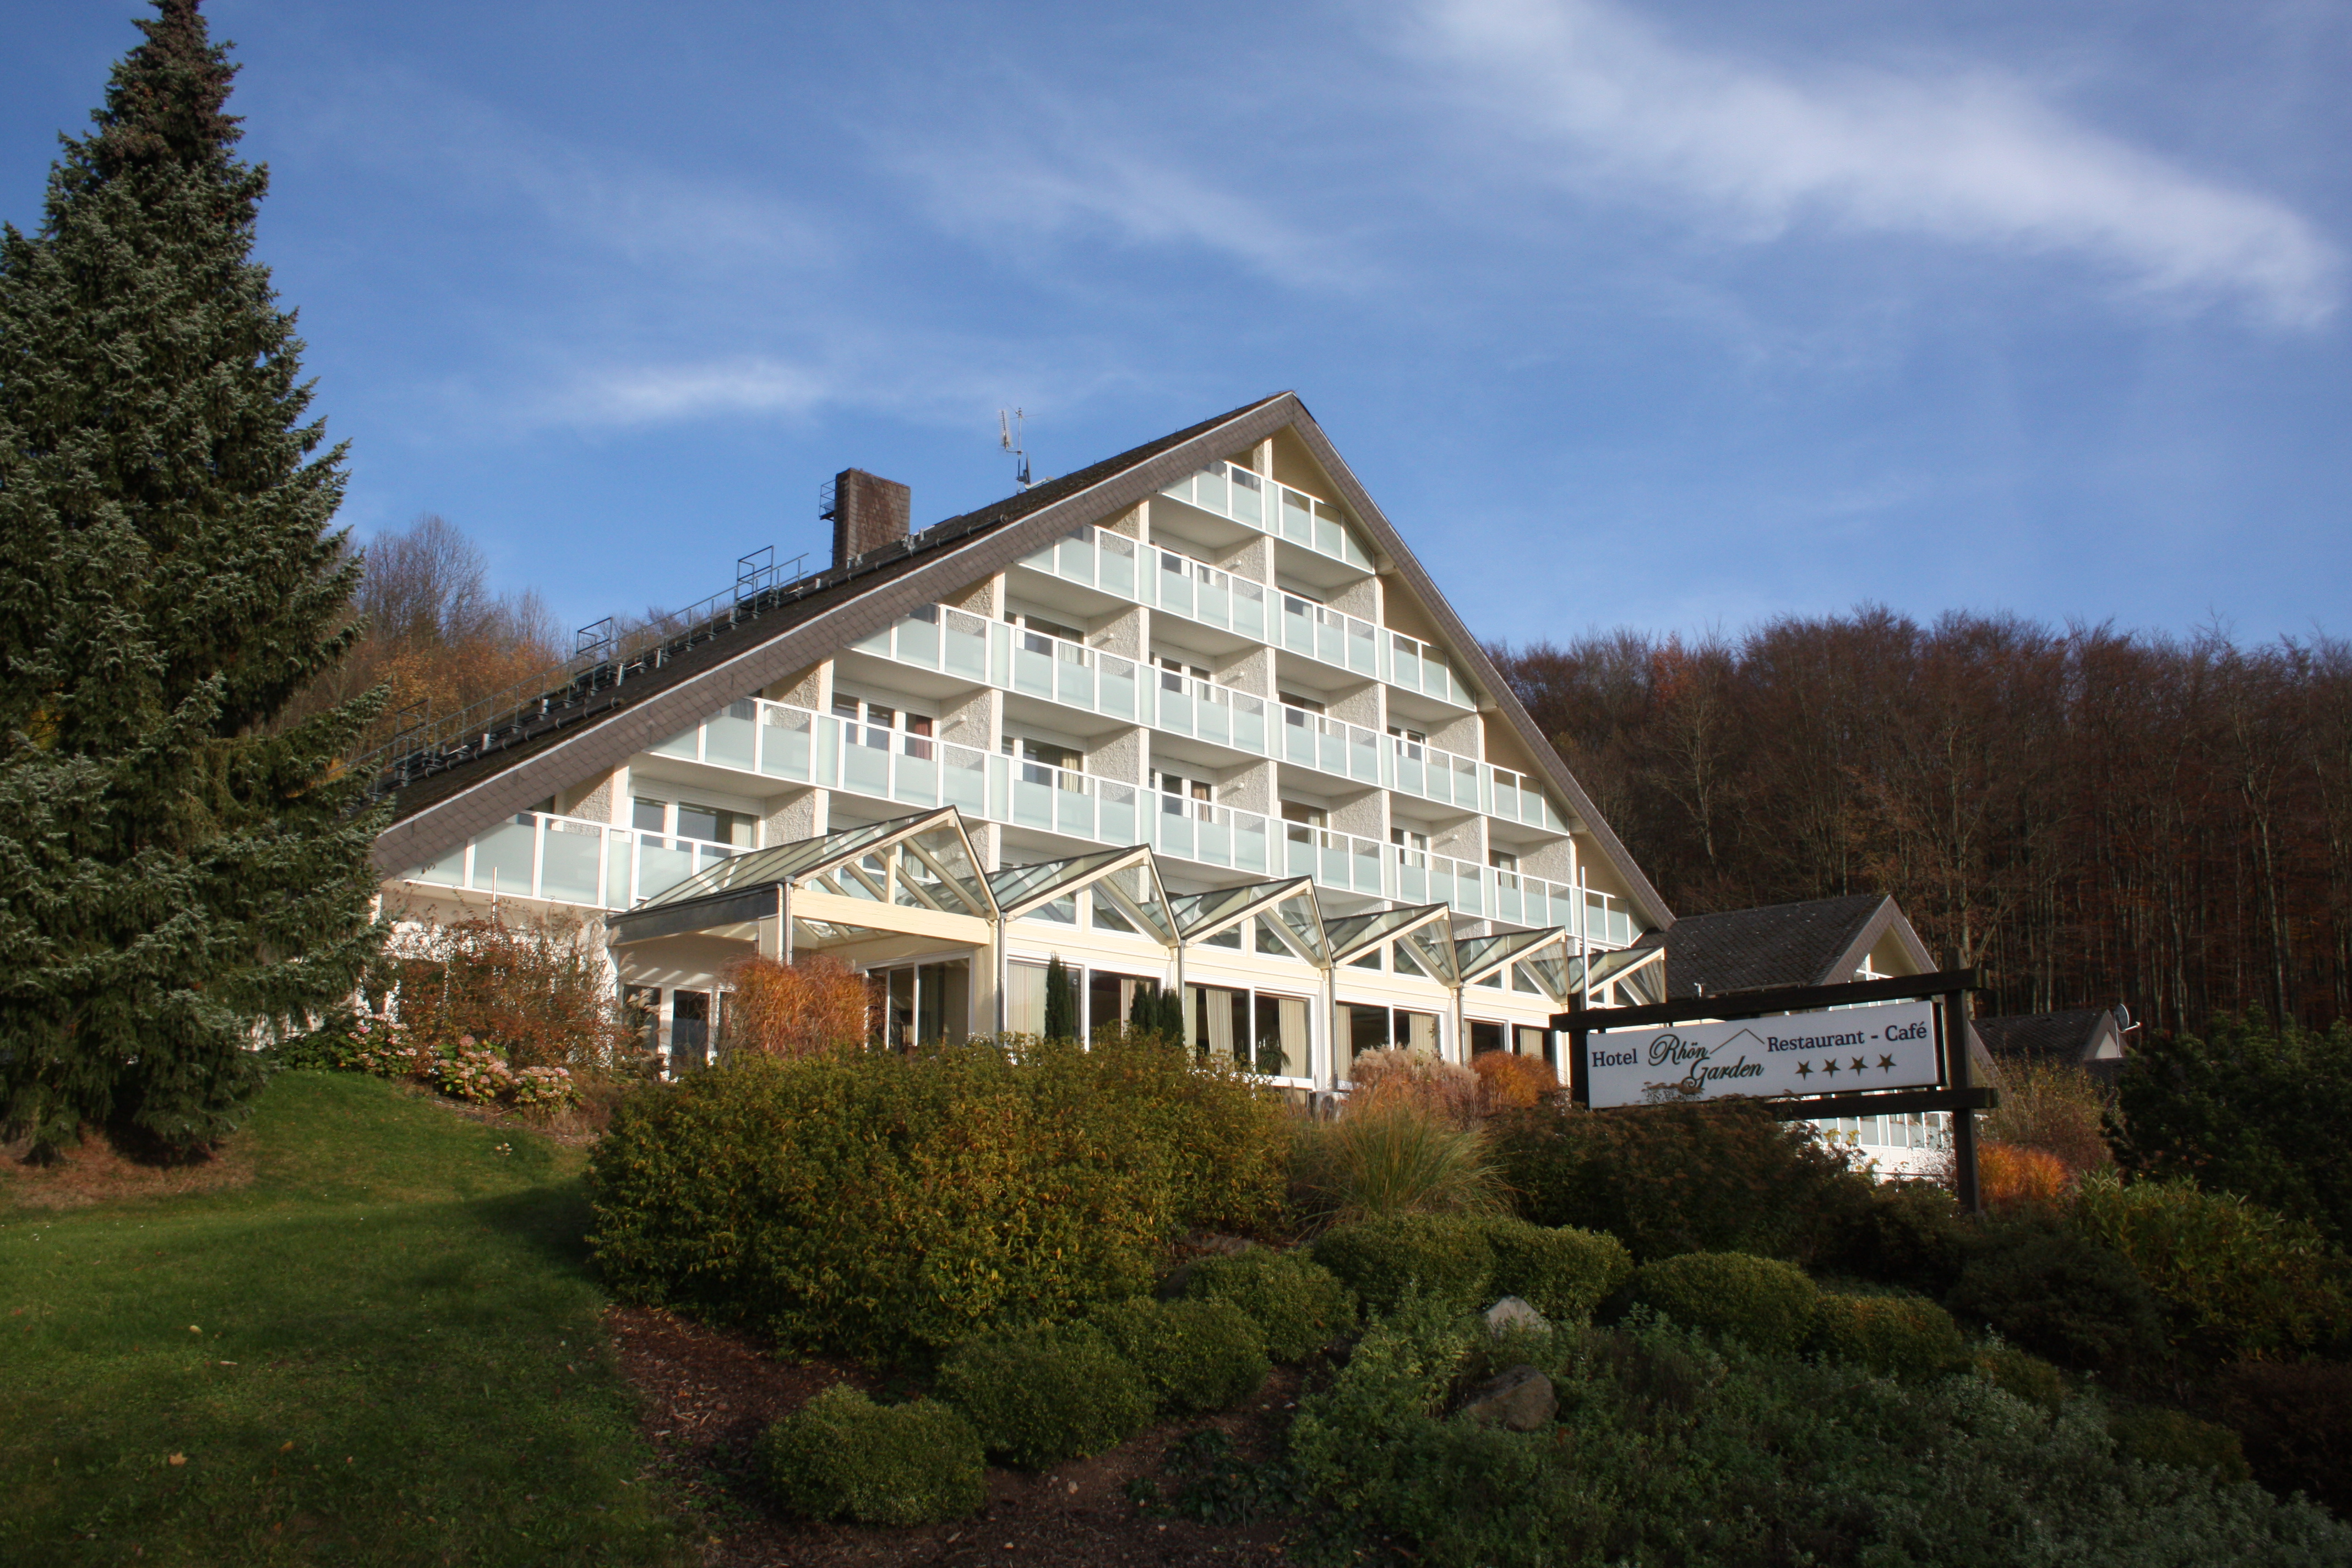 Hotel Rhön Garden, Poppenhausen (Wasserkuppe).
